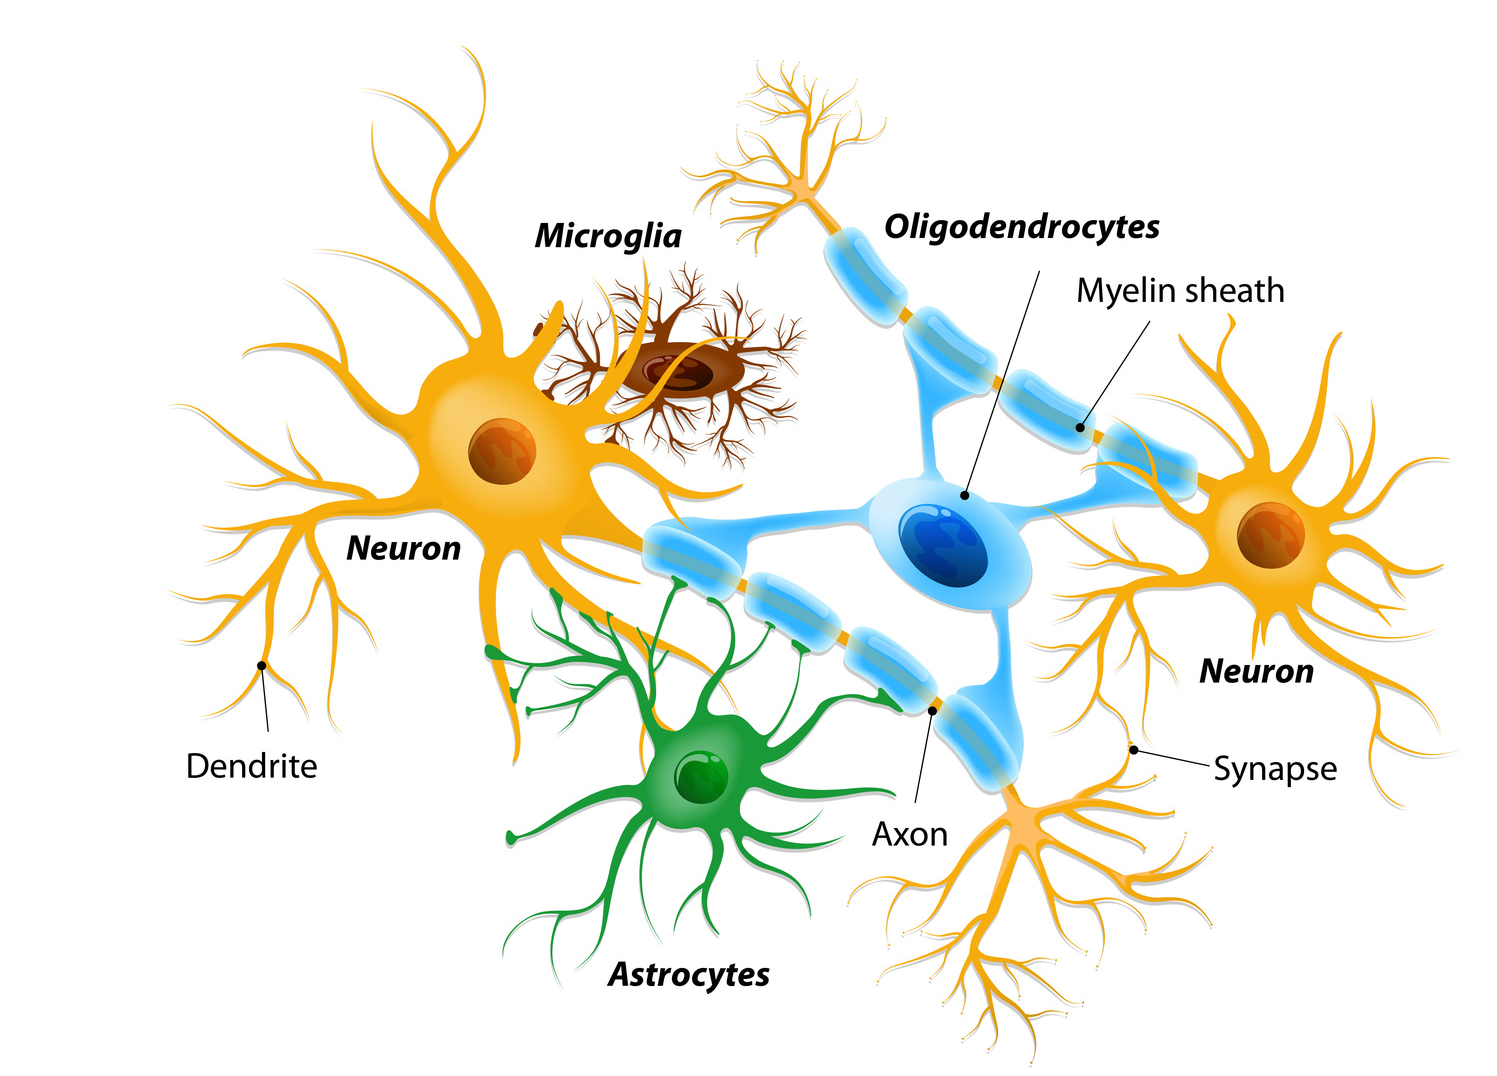 La microglía en el sistema nervioso central Creador: Zhabska T. | Imagen propiedad de: designua - Fotolia Copyright: designua - Fotolia